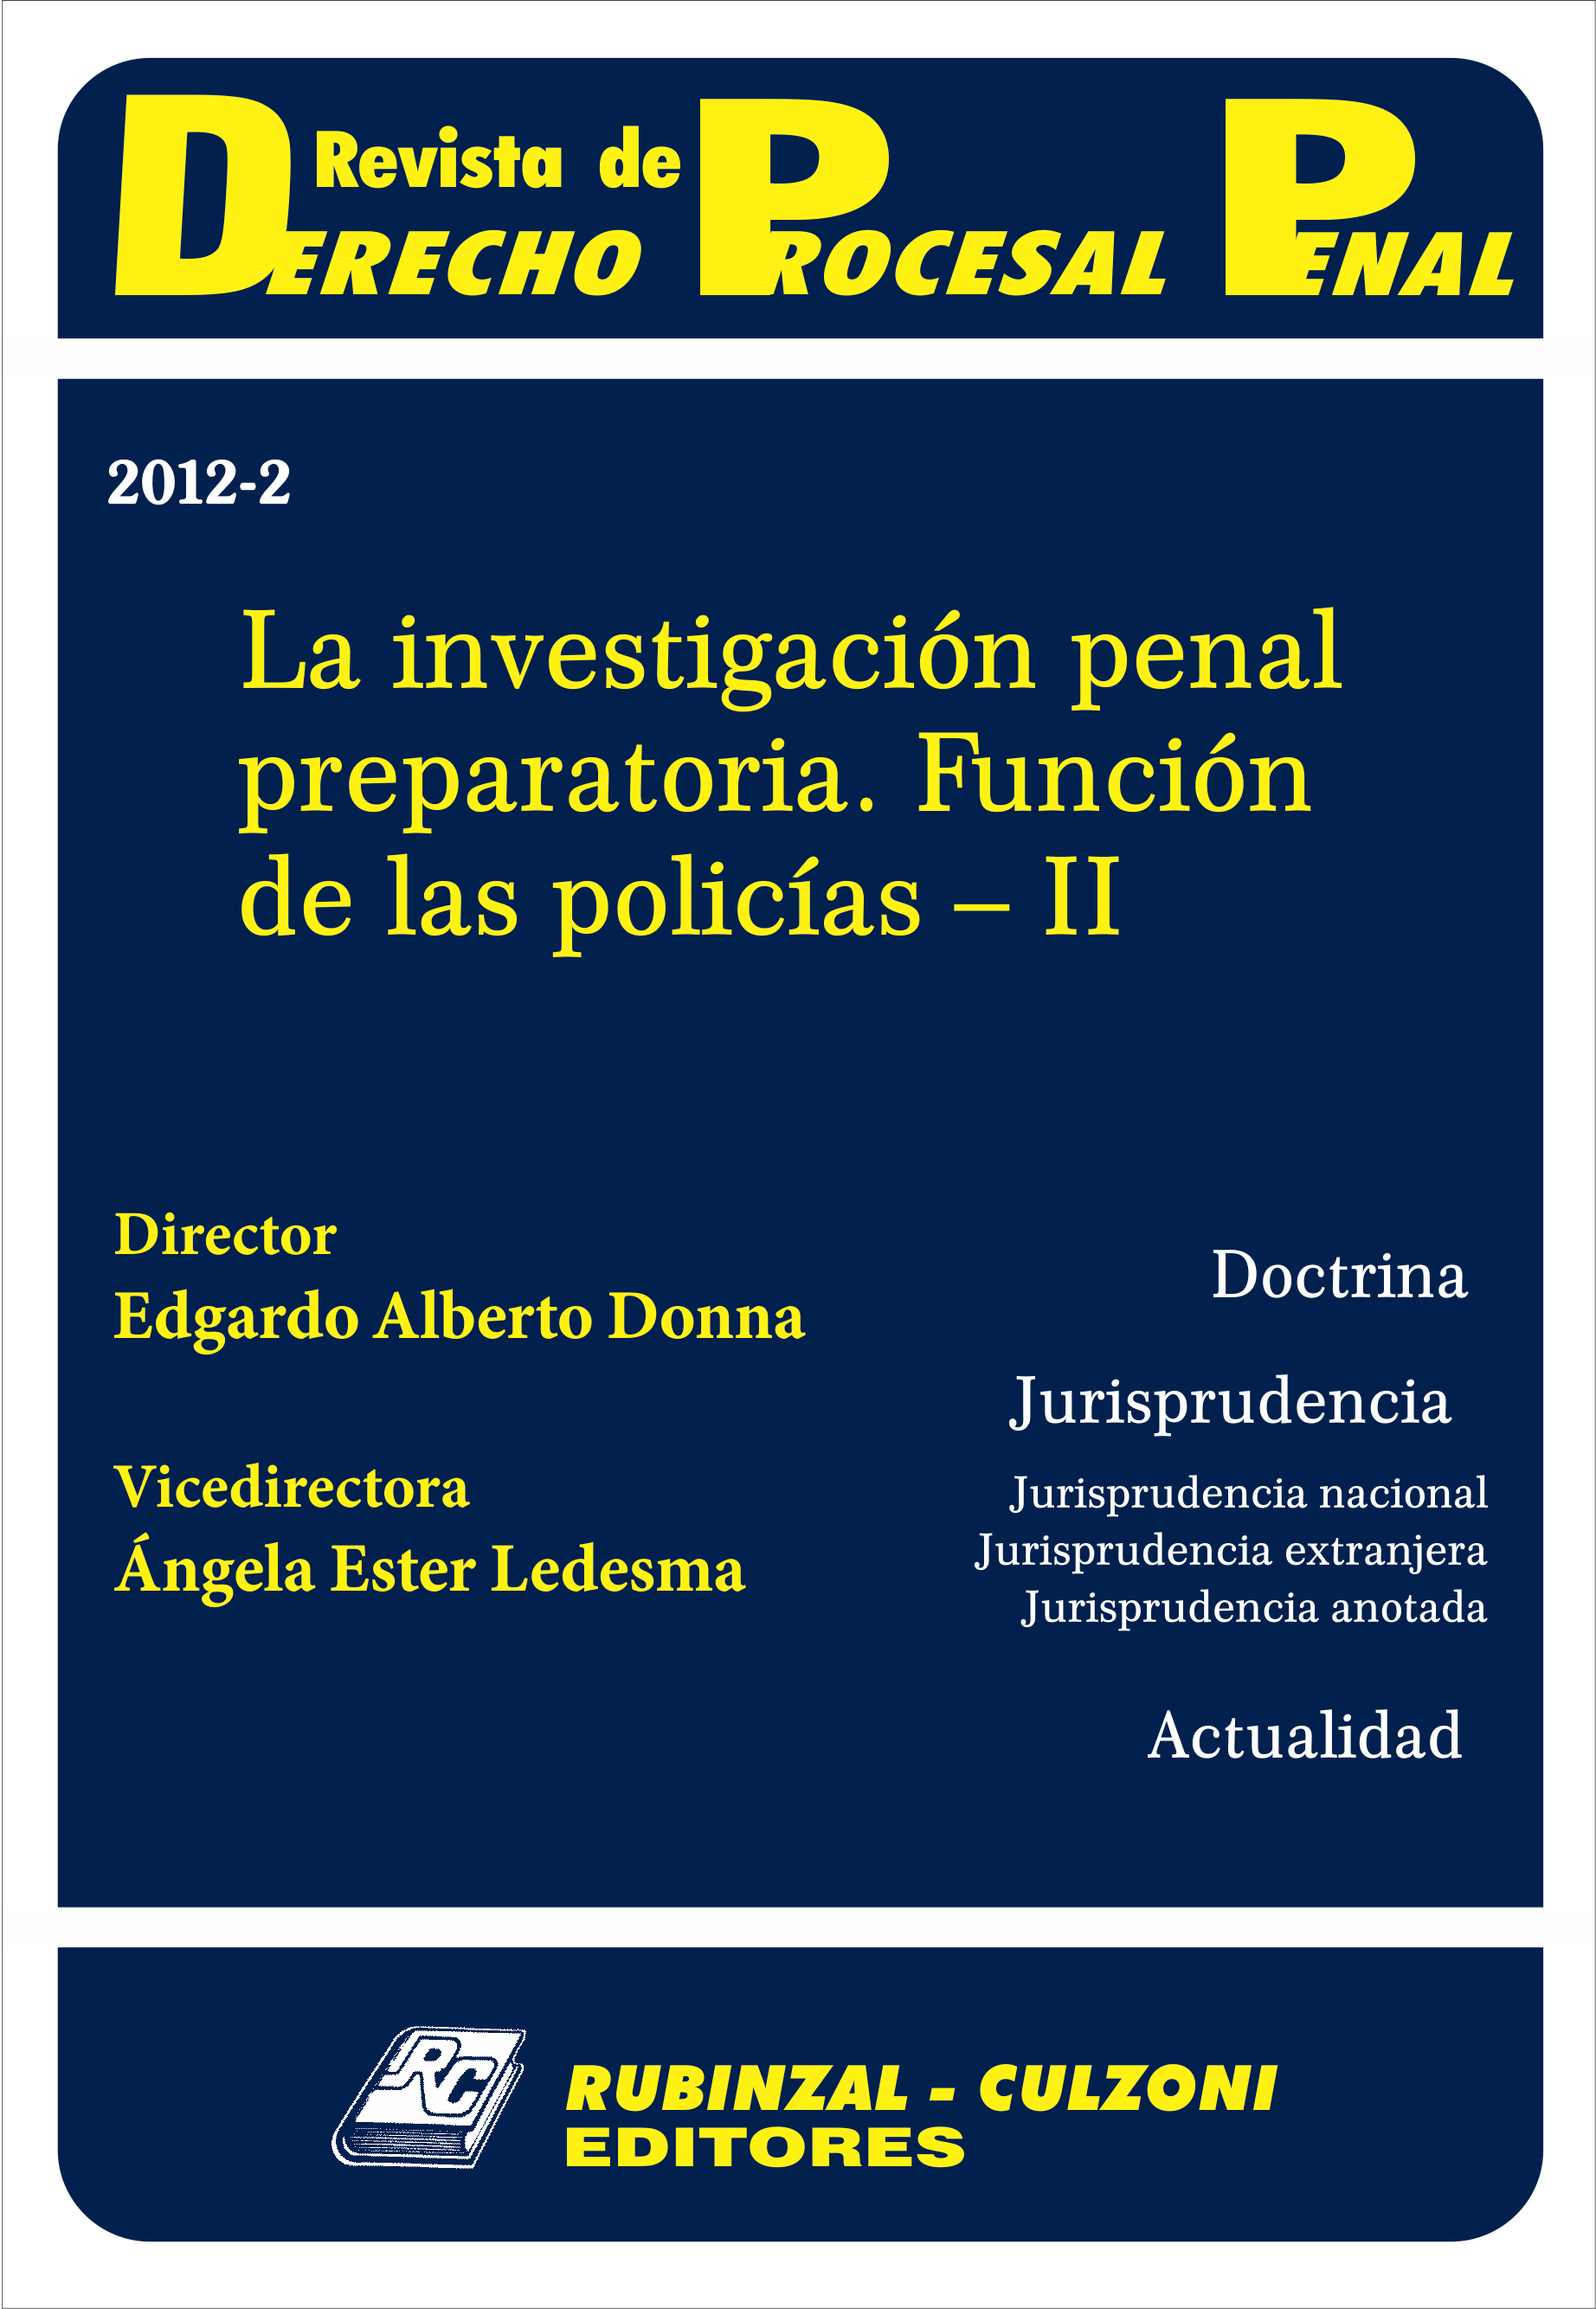 Revista de Derecho Procesal Penal - La investigación penal preparatoria